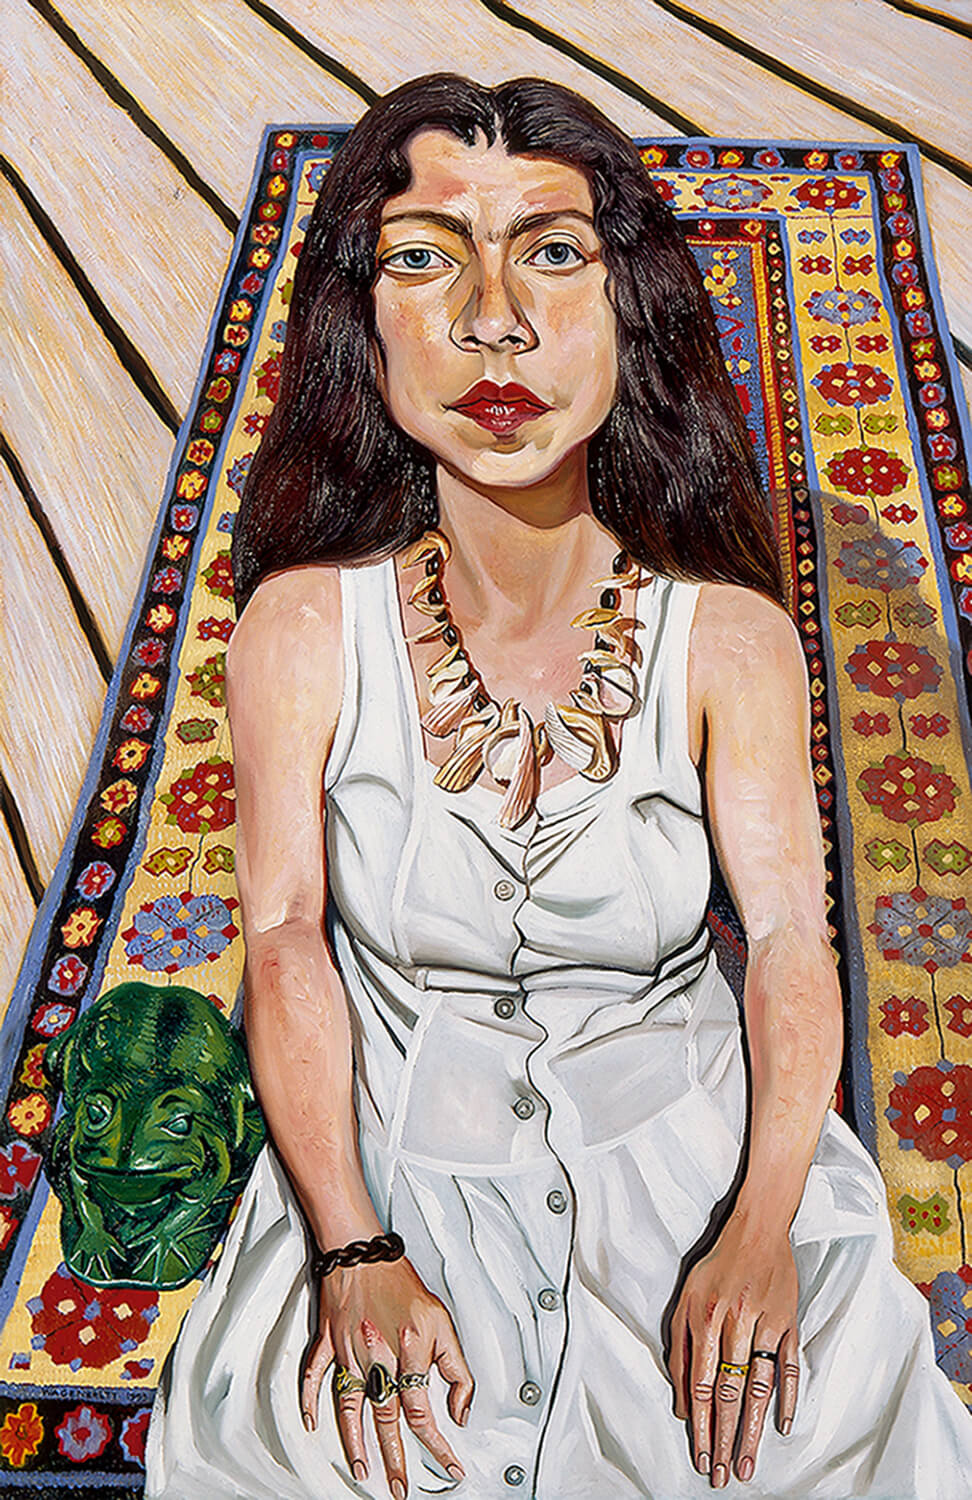 Norbert Wagenbrett, Frau im weißen Kleid, 1993, Öl auf Leinwand, 140 x 90 cm